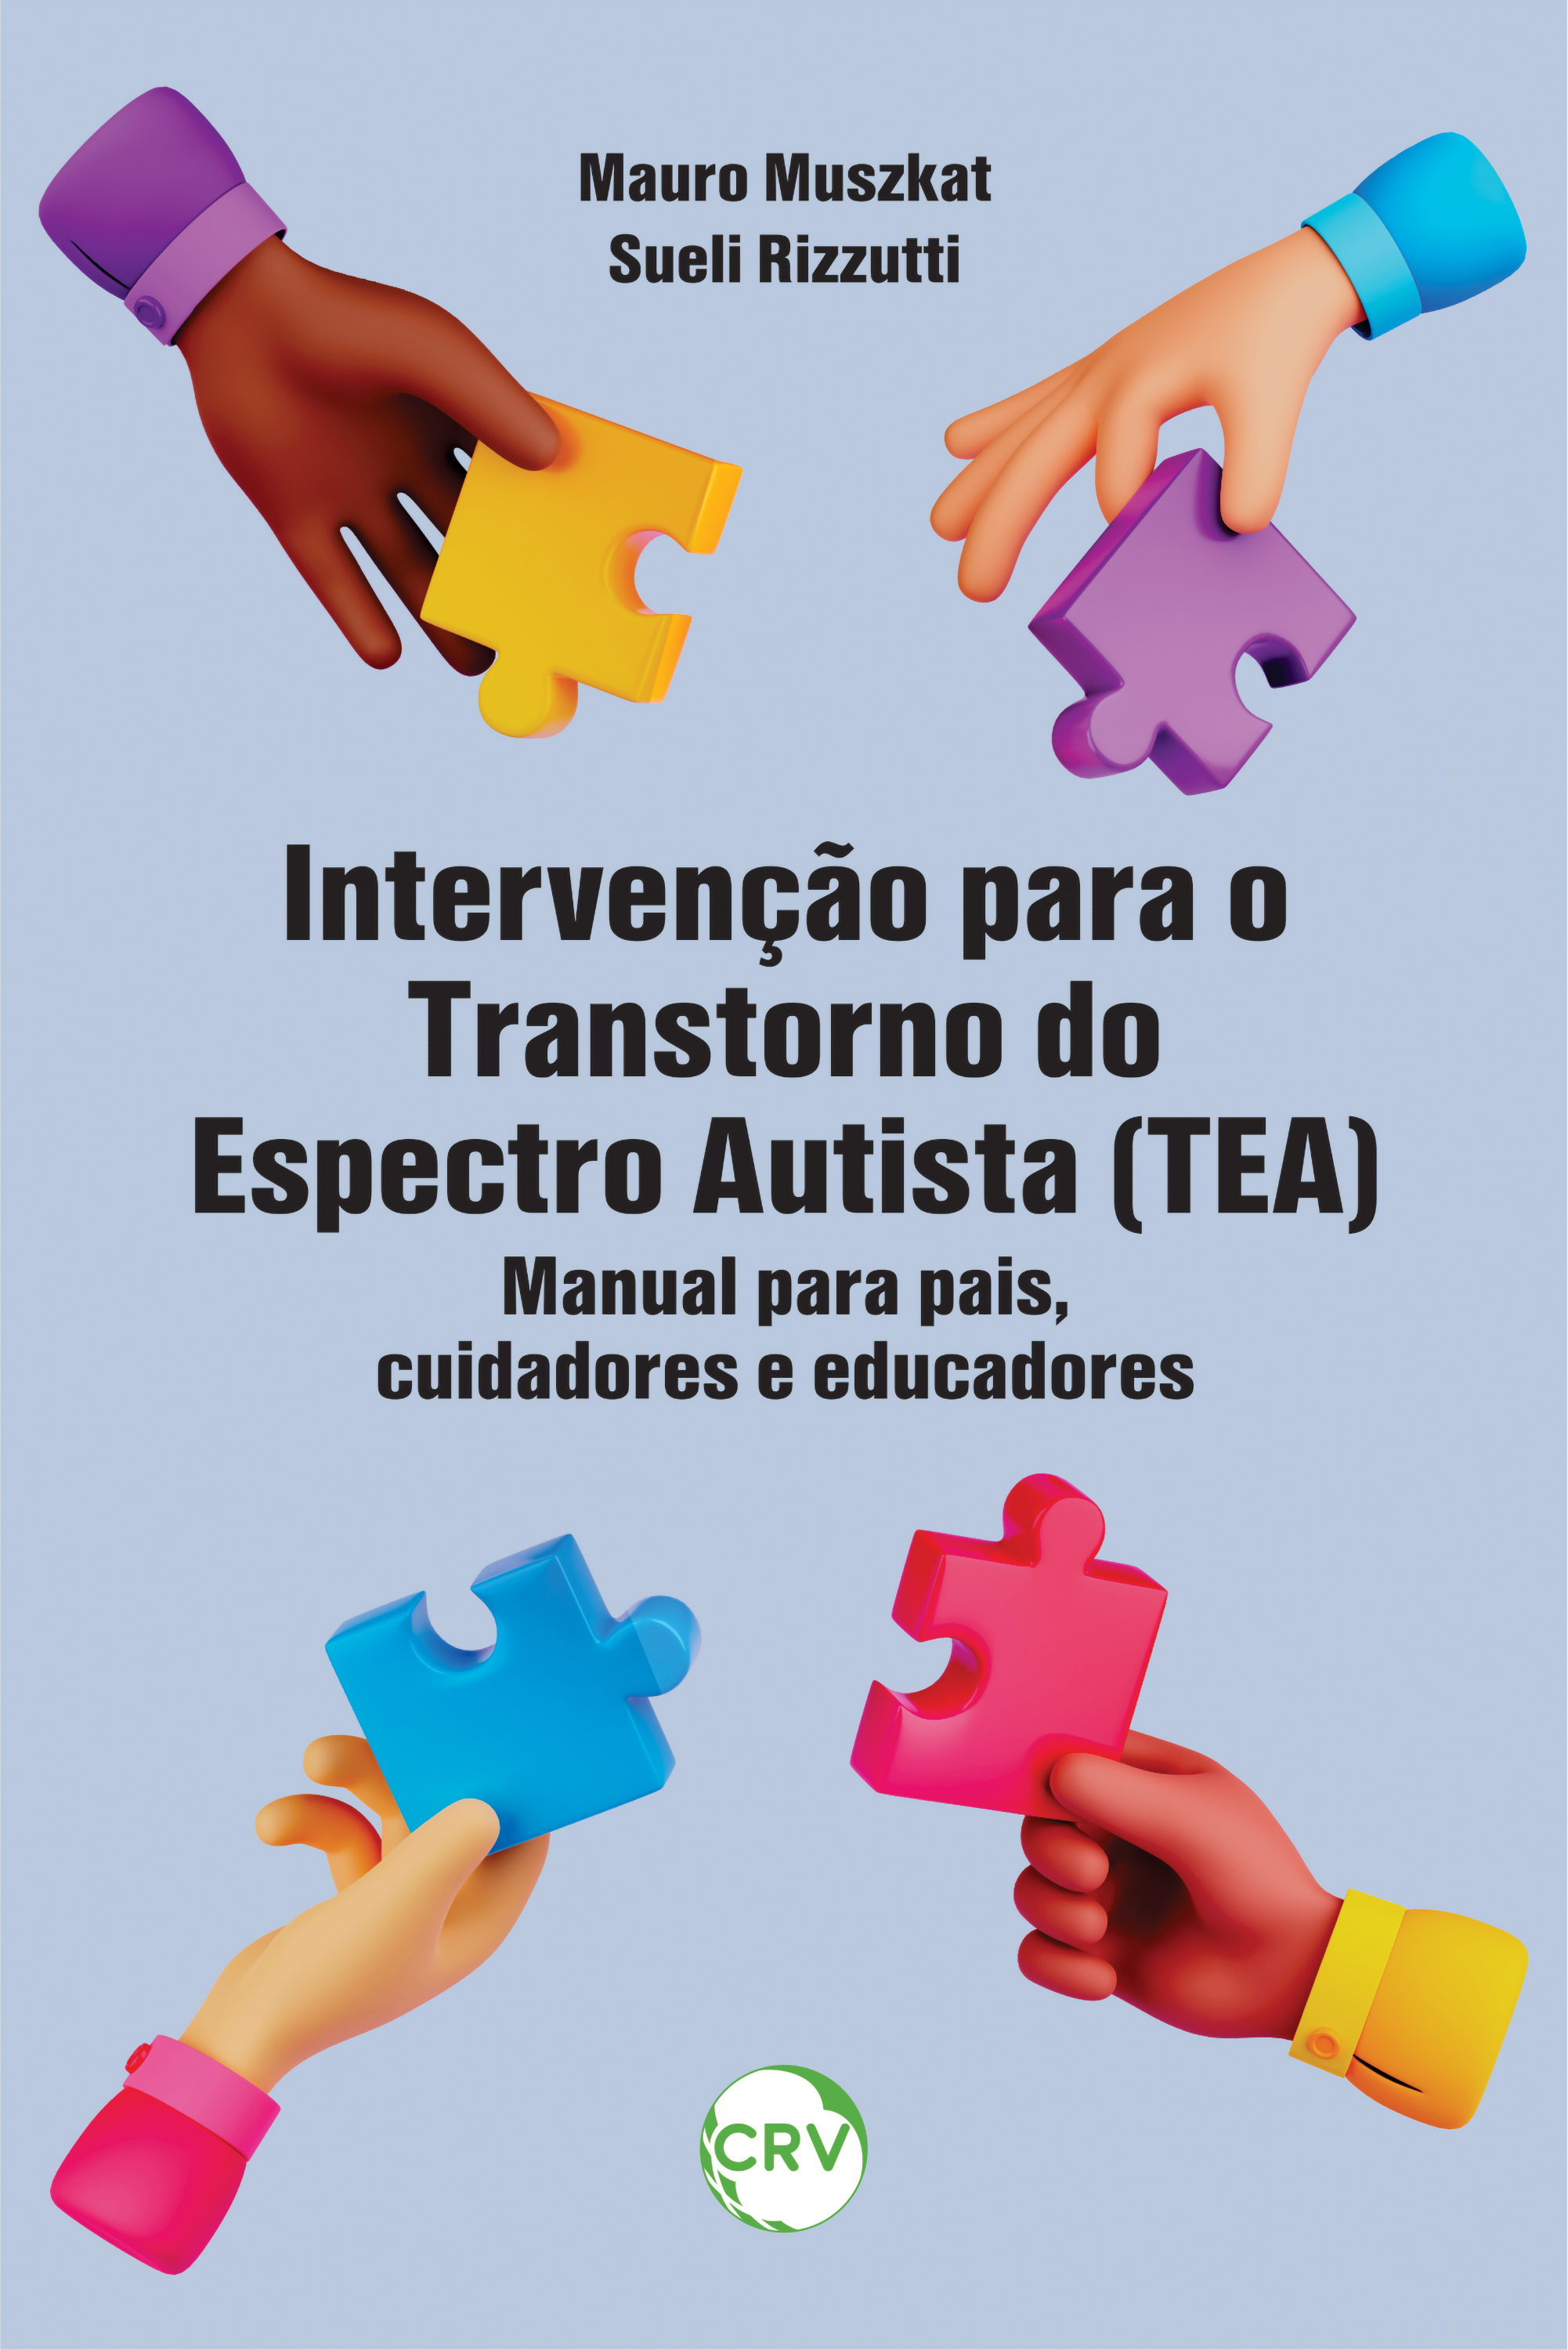 Intervenção para o transtorno do espectro autista (TEA)